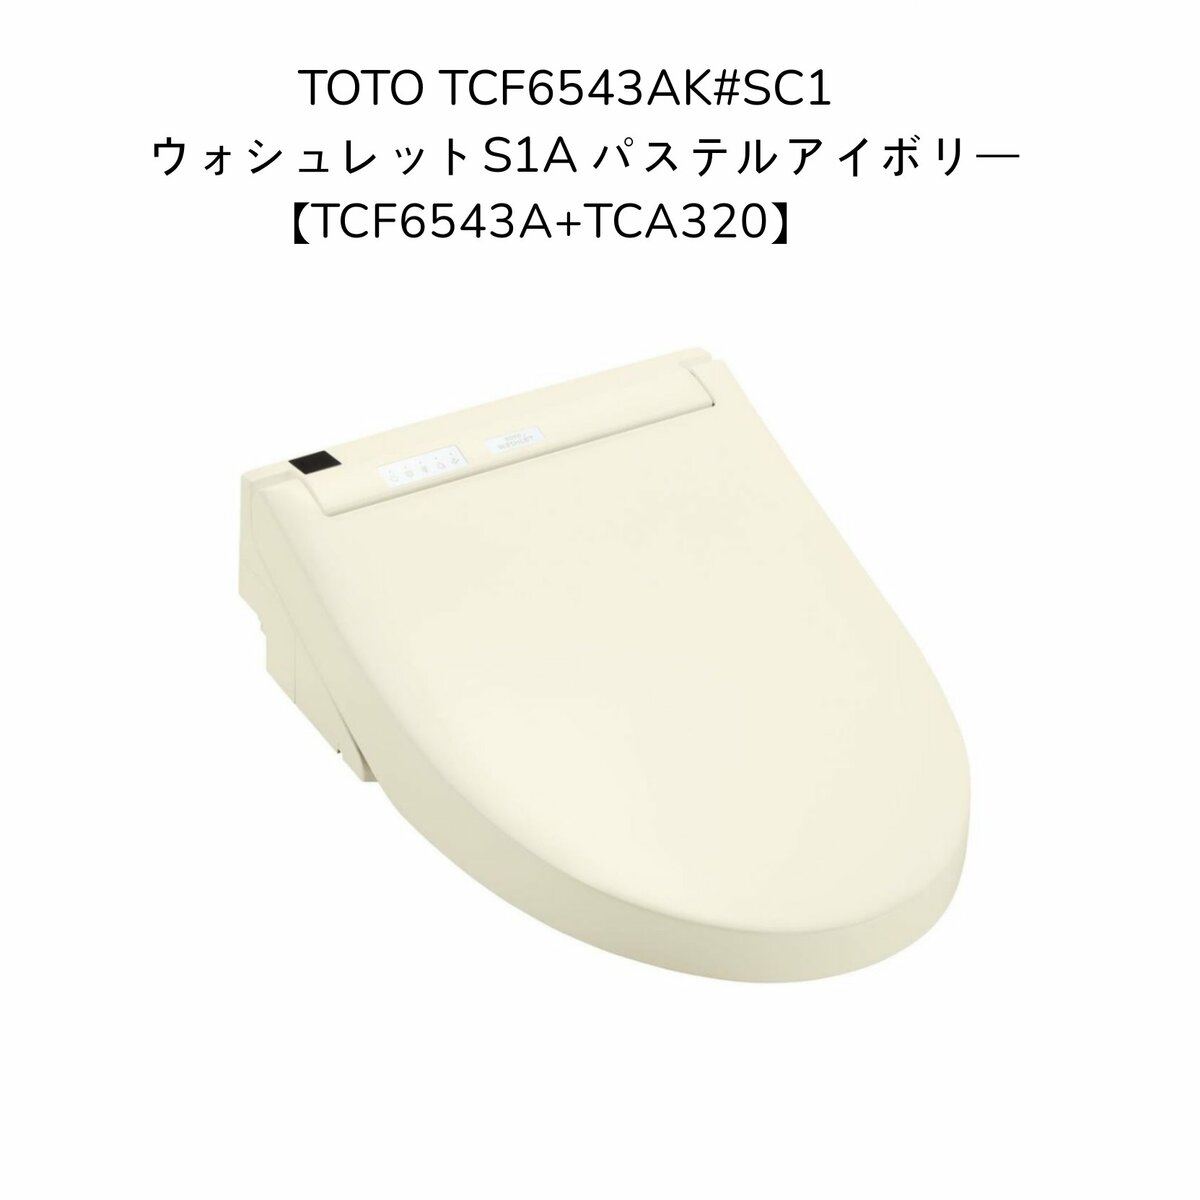 超美品の TOTO TCF4833AKS#NW1ウォシュレット アプリコットF3AW ホワイト オート洗浄 4.8L洗浄便器用 洗浄便座 瞬間式 暖房 便座 シャワートイレ